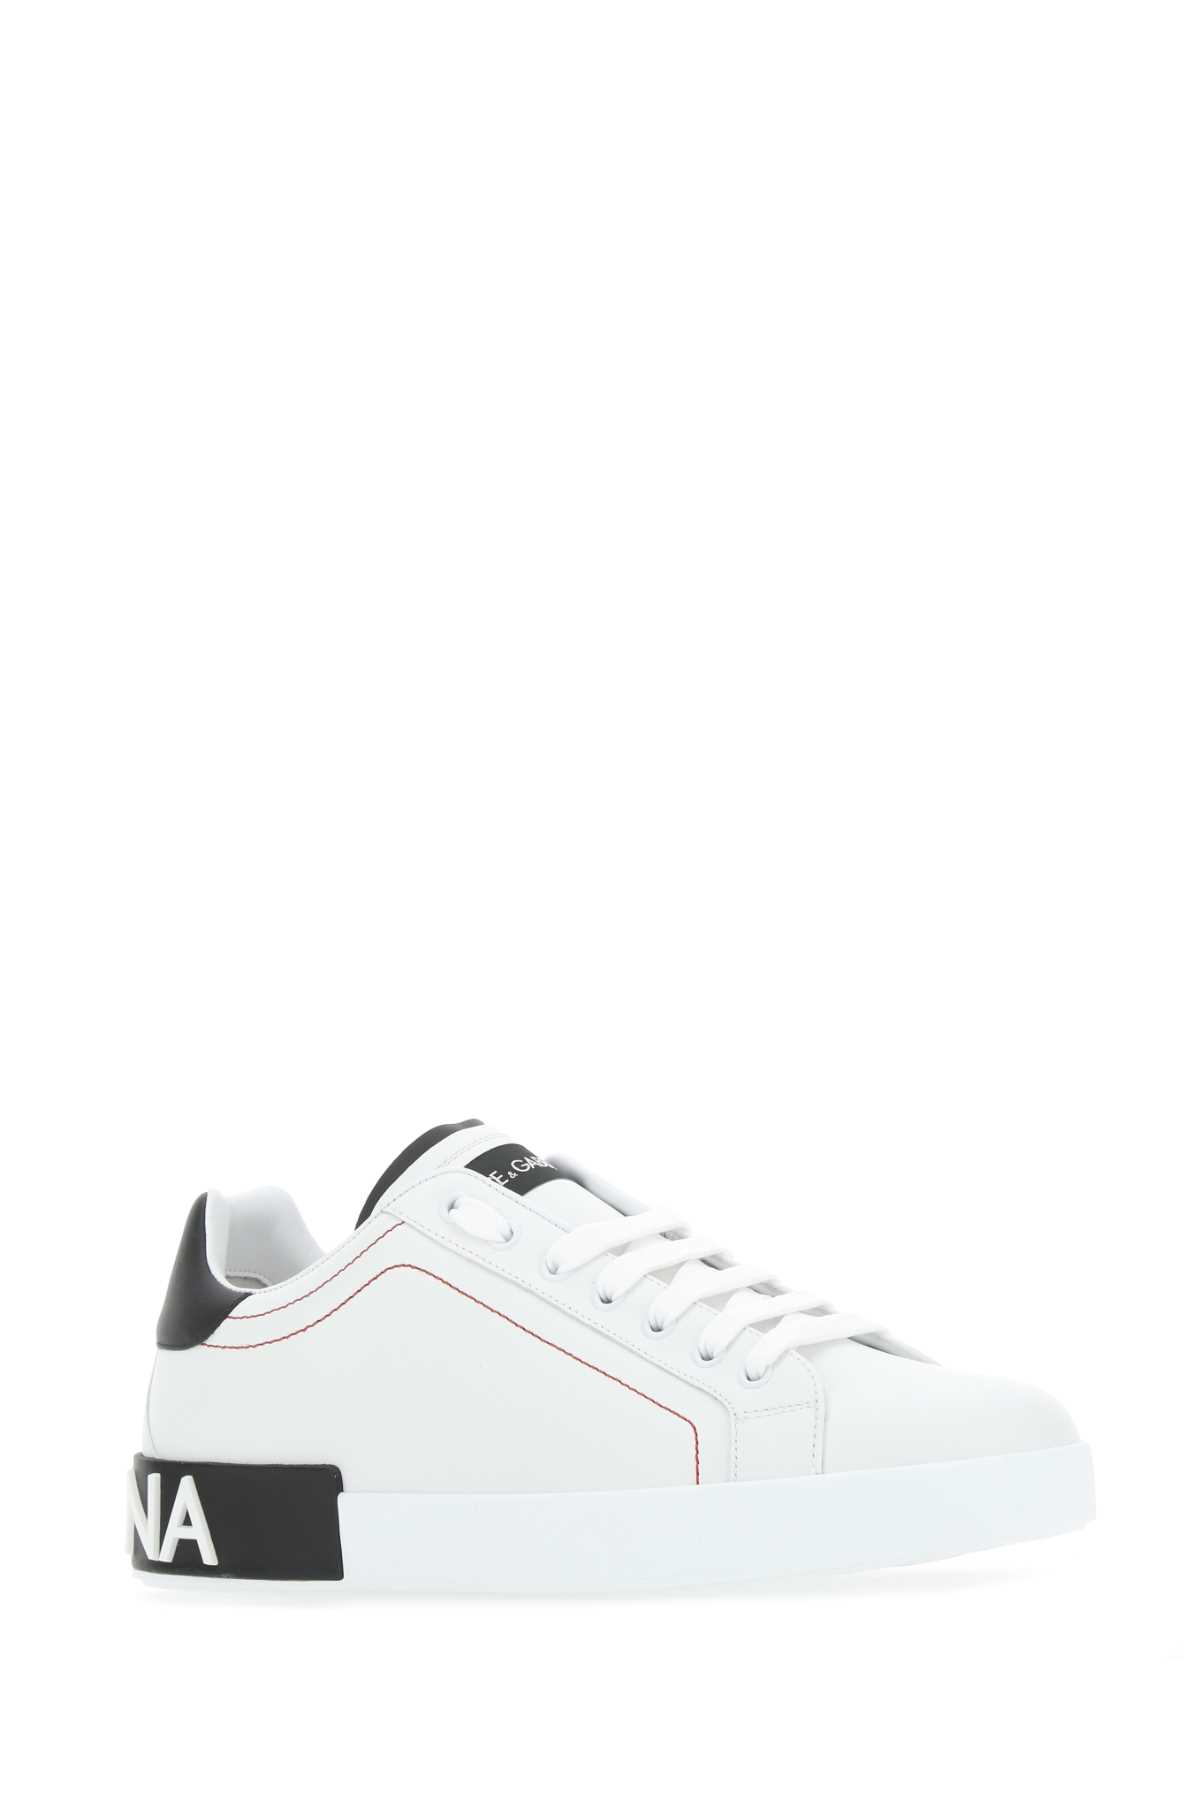 Shop Dolce & Gabbana White Nappa Leather Portofino Sneakers In Bianconero